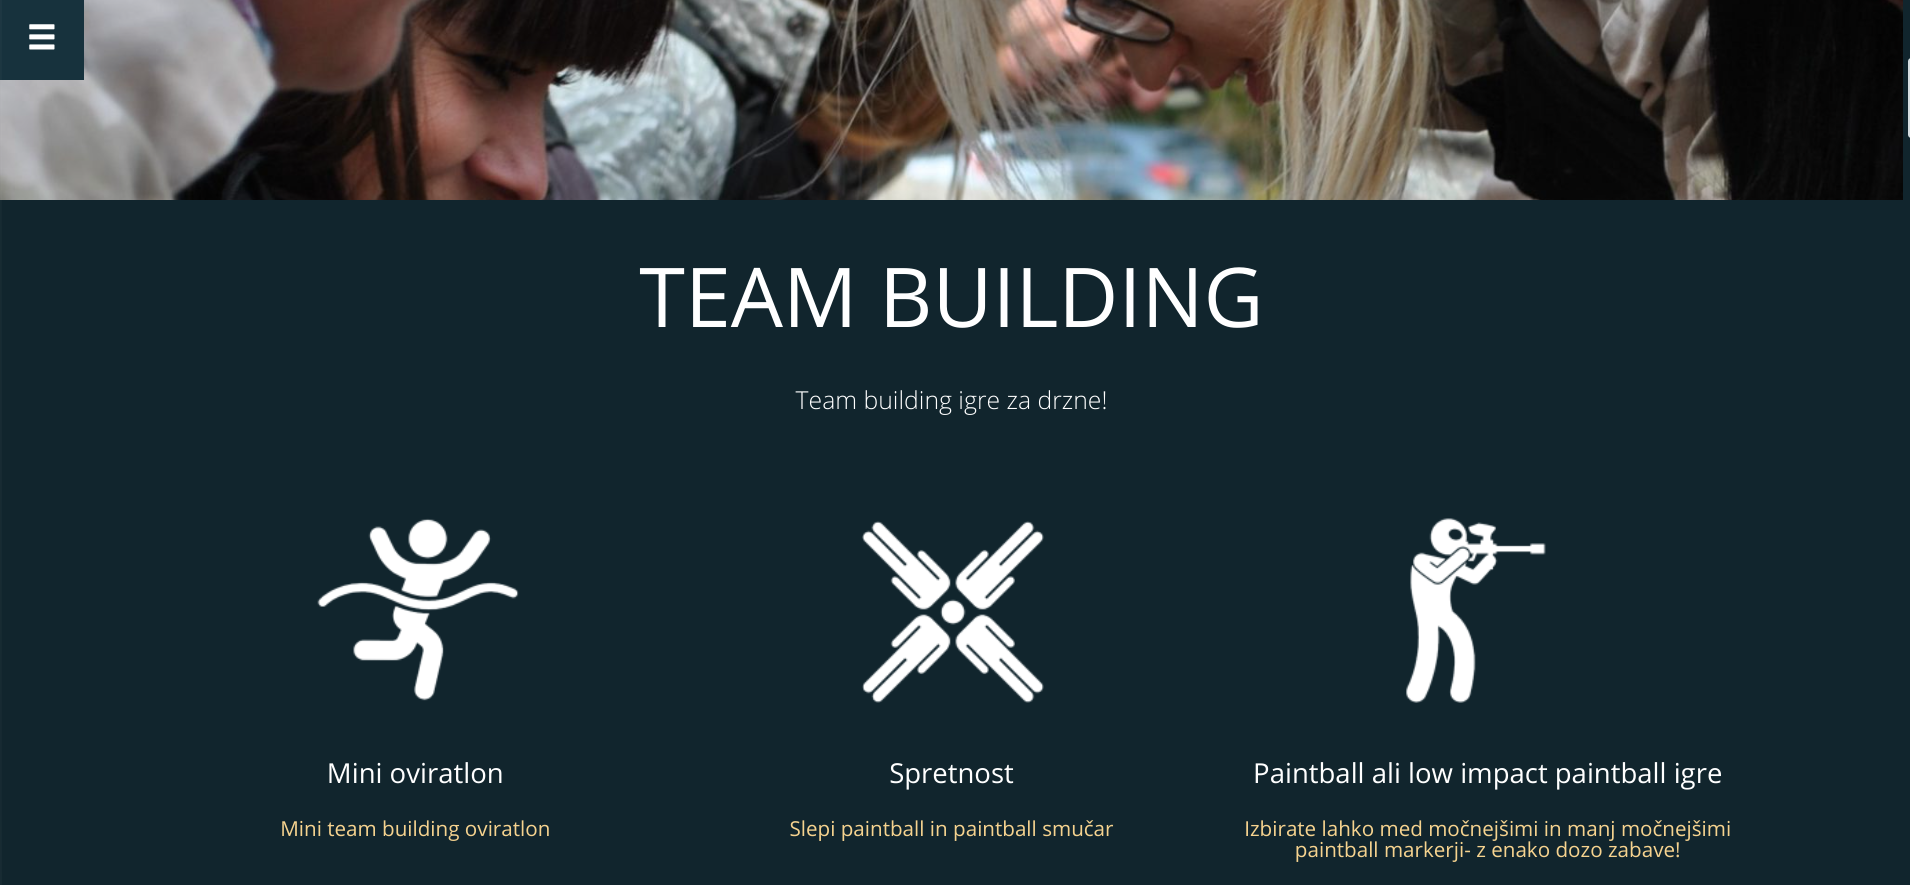 team building - copywriting